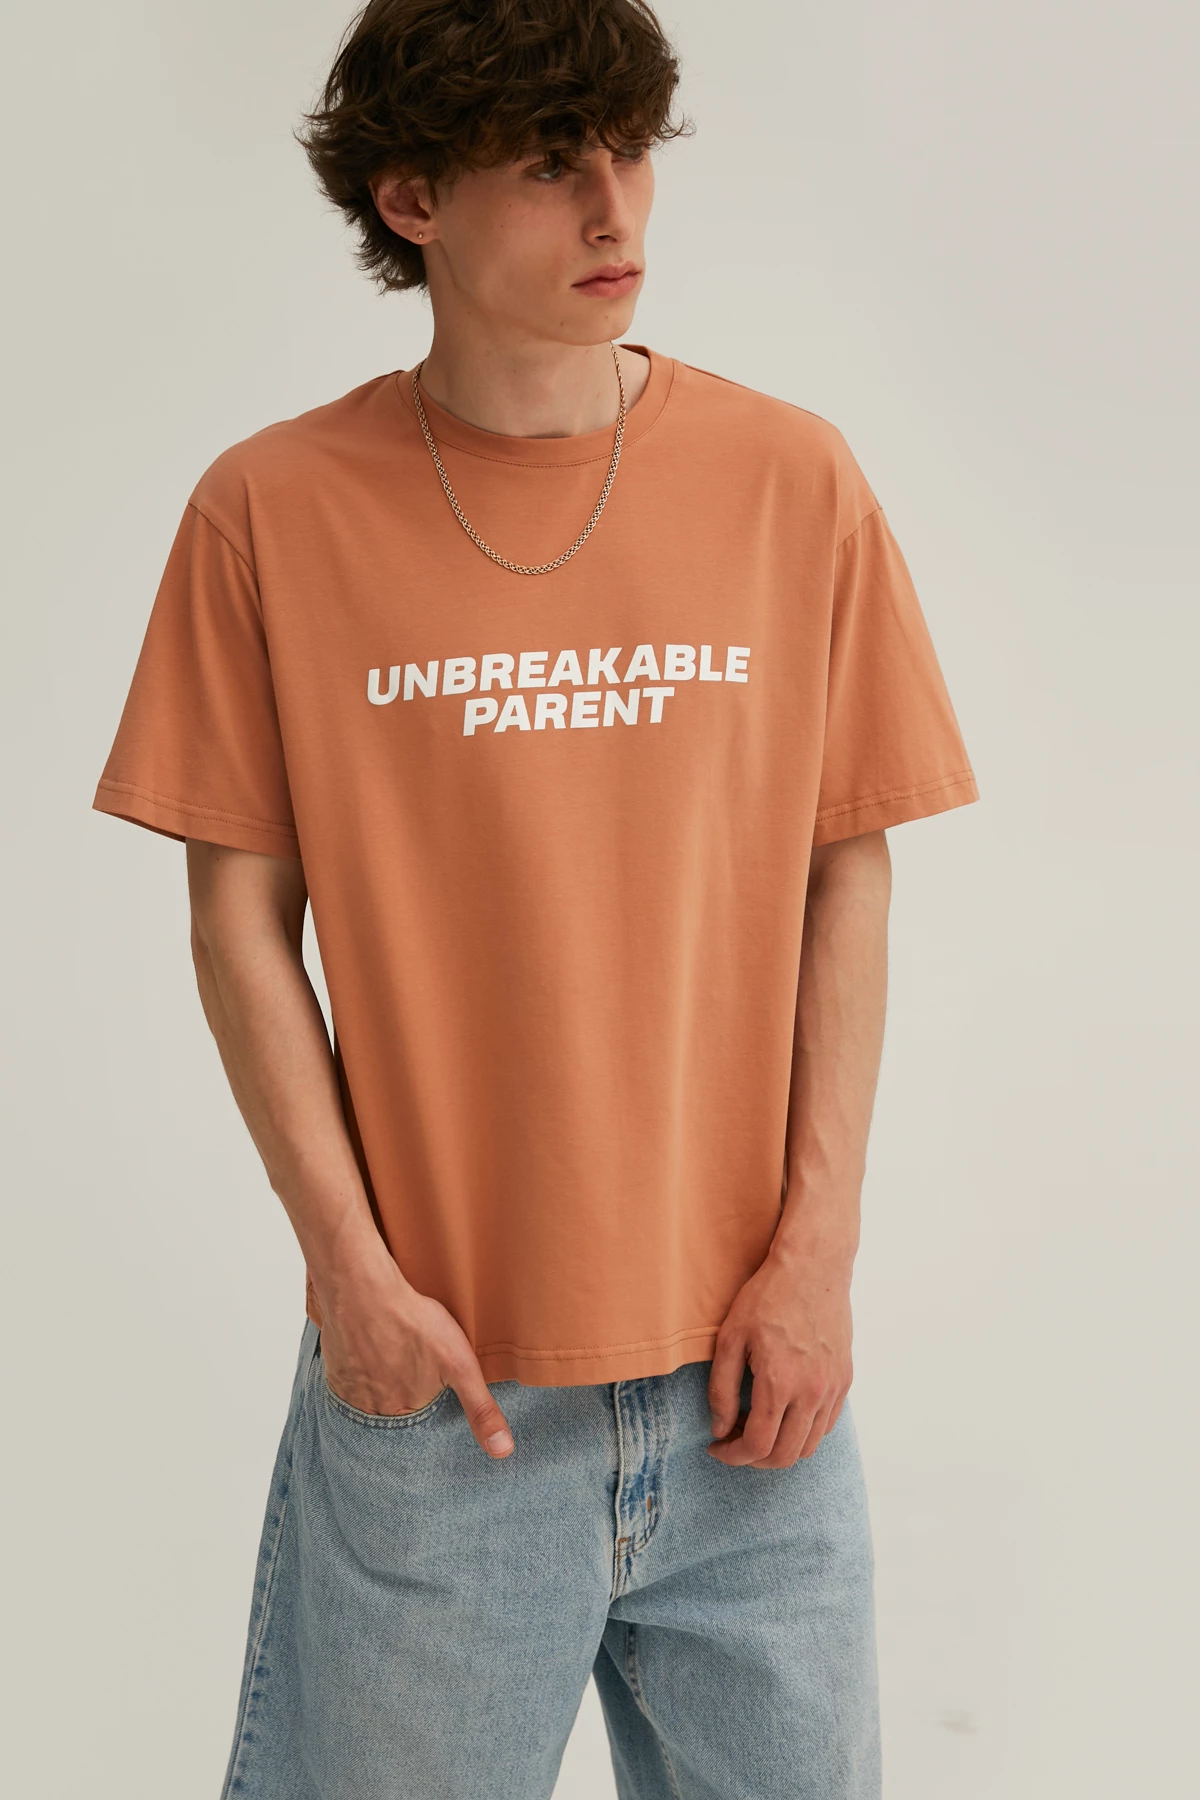 Карамельна унісекс-футболка з написом "Unbreakable parent" з трикотажу, фото 4